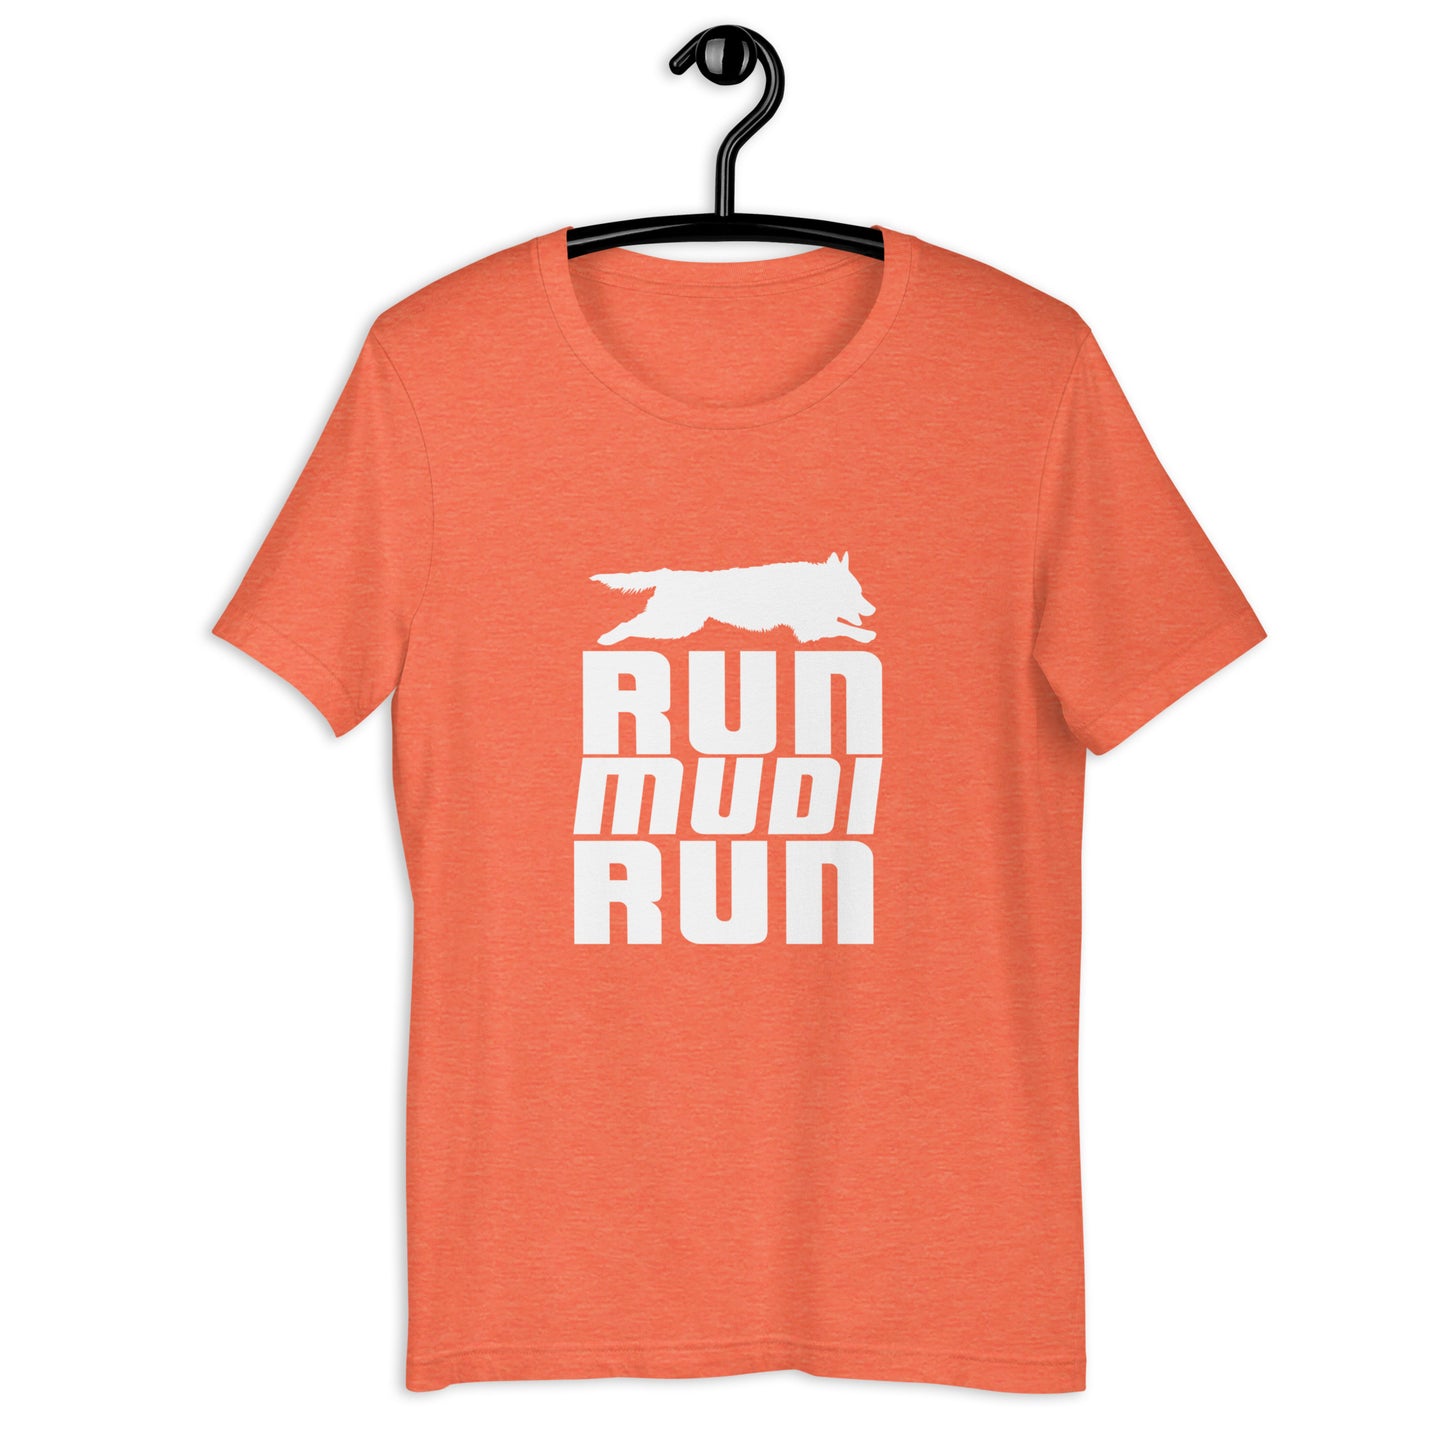 RUN MUDI RUN - Unisex t-shirt